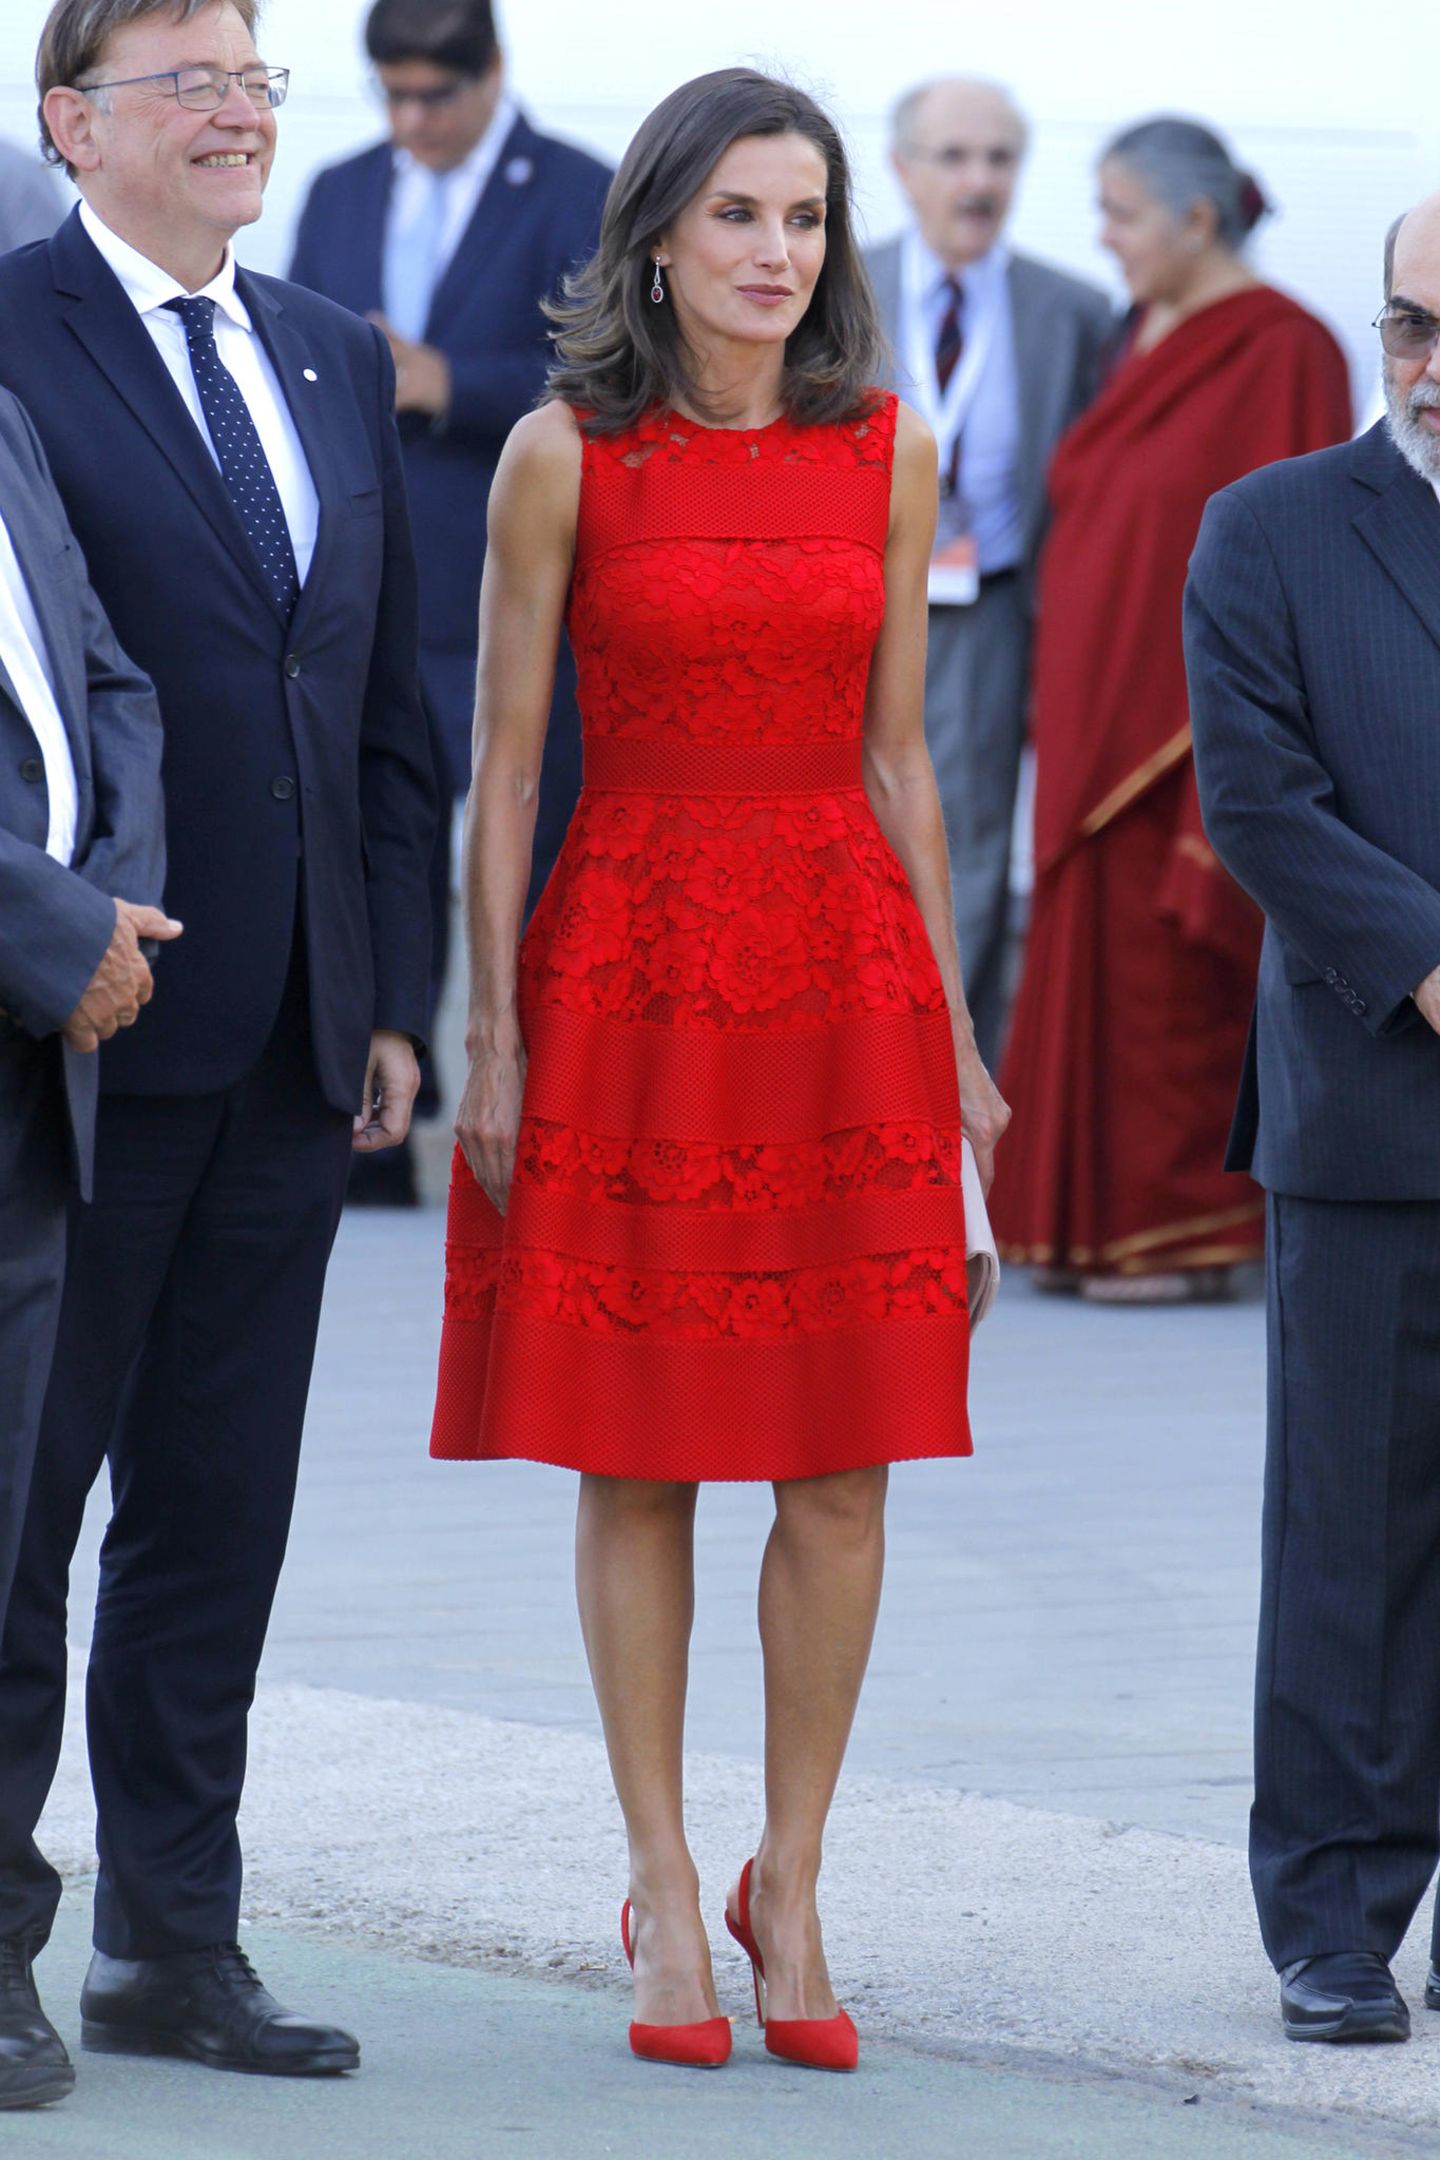 Rot ist die Farbe der Liebe – und ganz offensichtlich auch die Farbe von Königin Letizia. Das knallige Spitzenkleid scheint jedenfalls zu den Lieblingsstücken in ihrem royalen Kleiderschrank zu gehören.